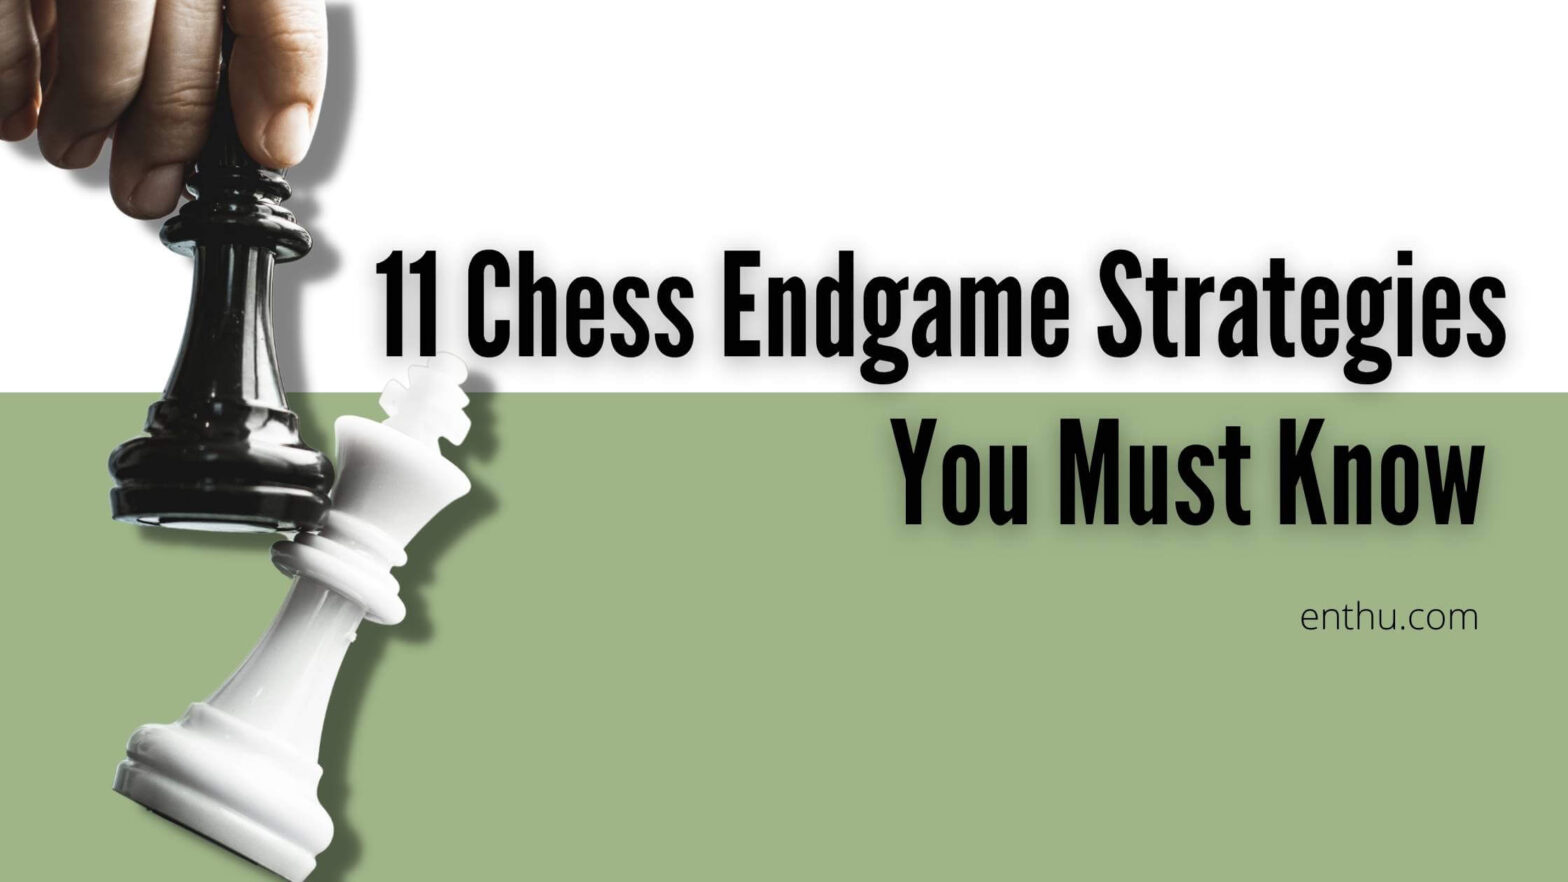 Endgame roadmap: 9 strategies to play endgames